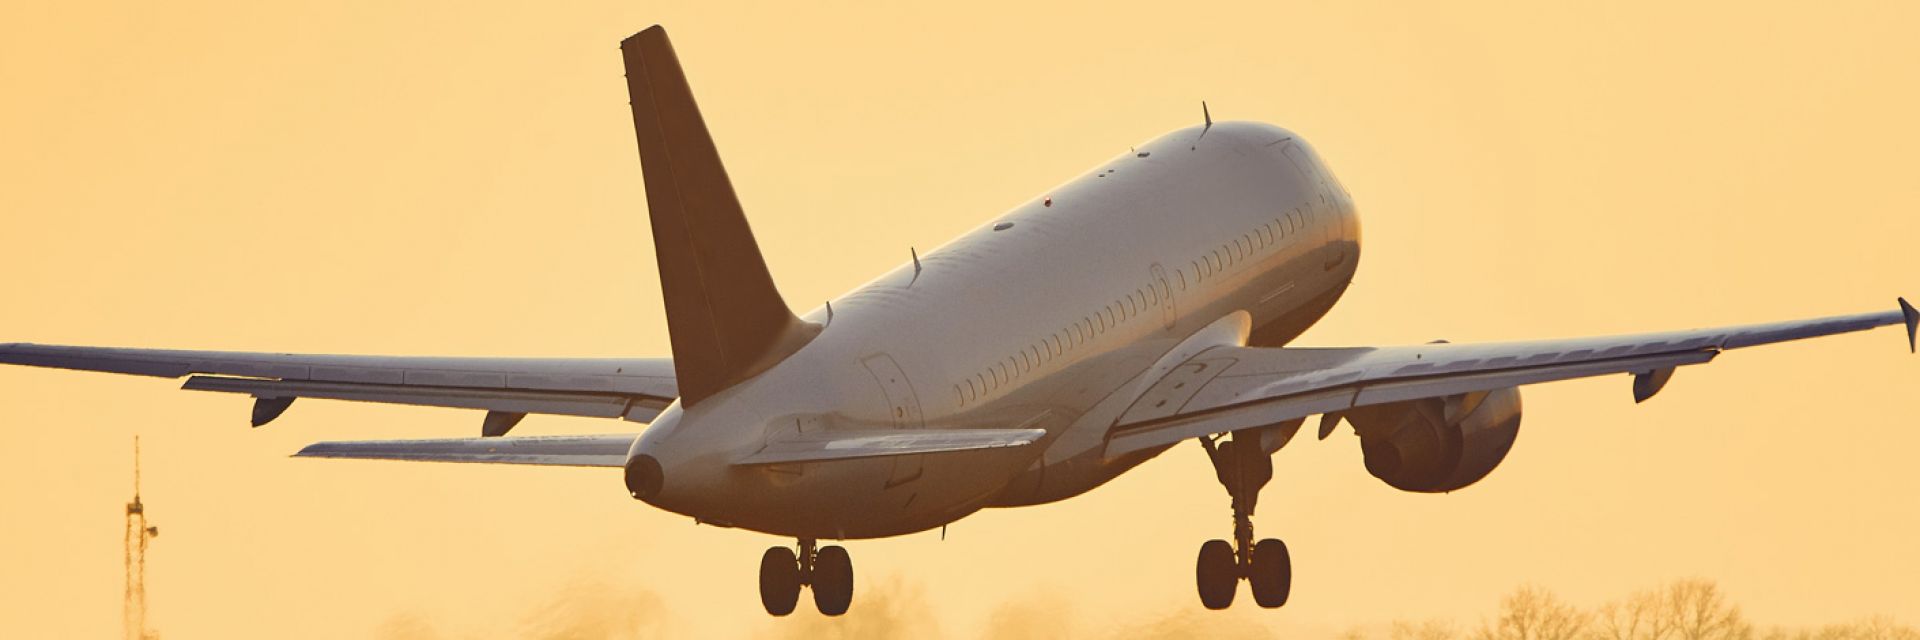 Conheça 5 dicas para perder o medo de avião